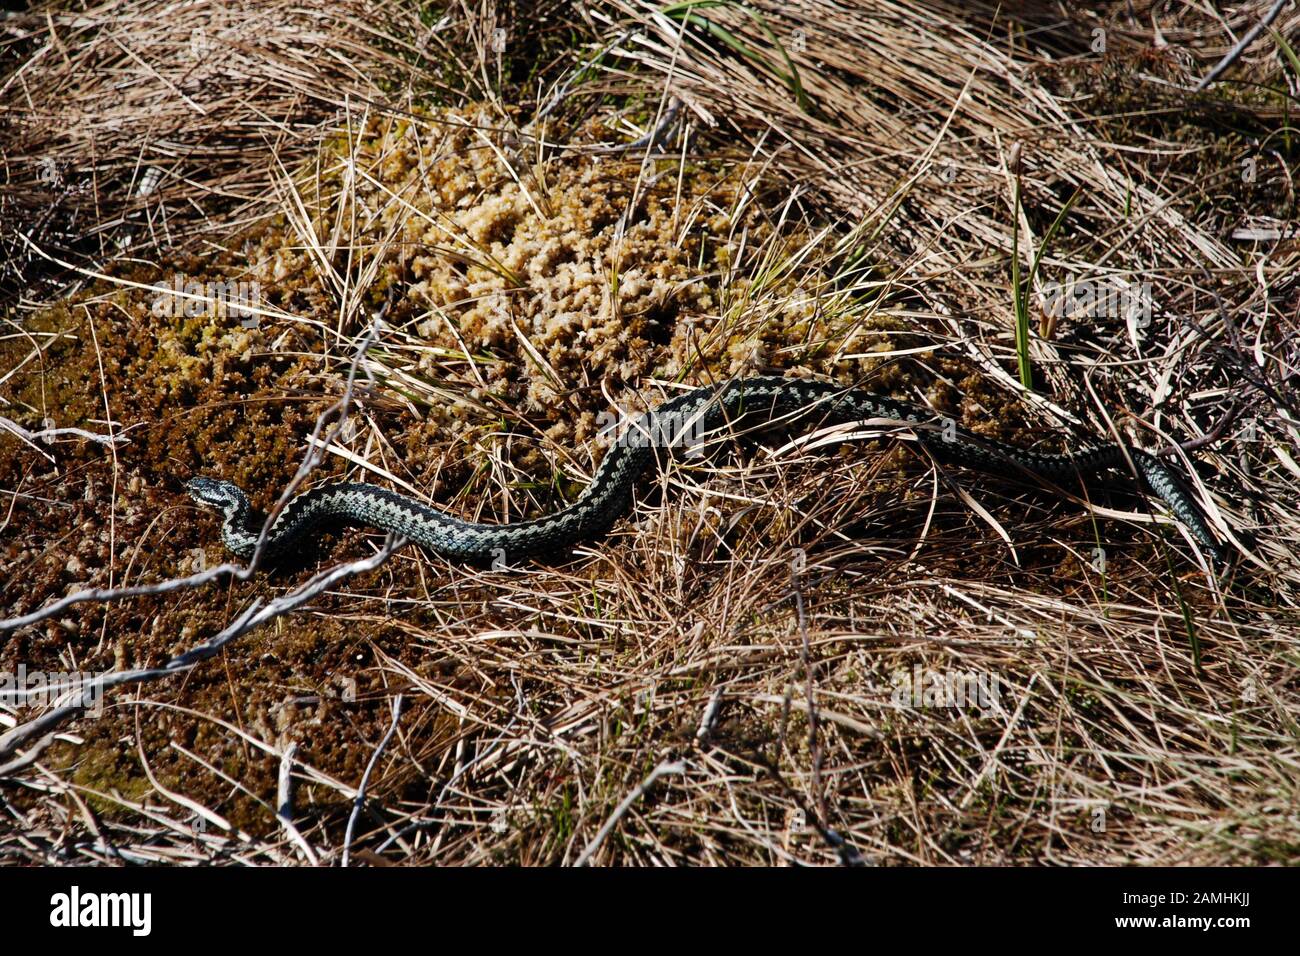 Norwegian viper in natural habitat Stock Photo